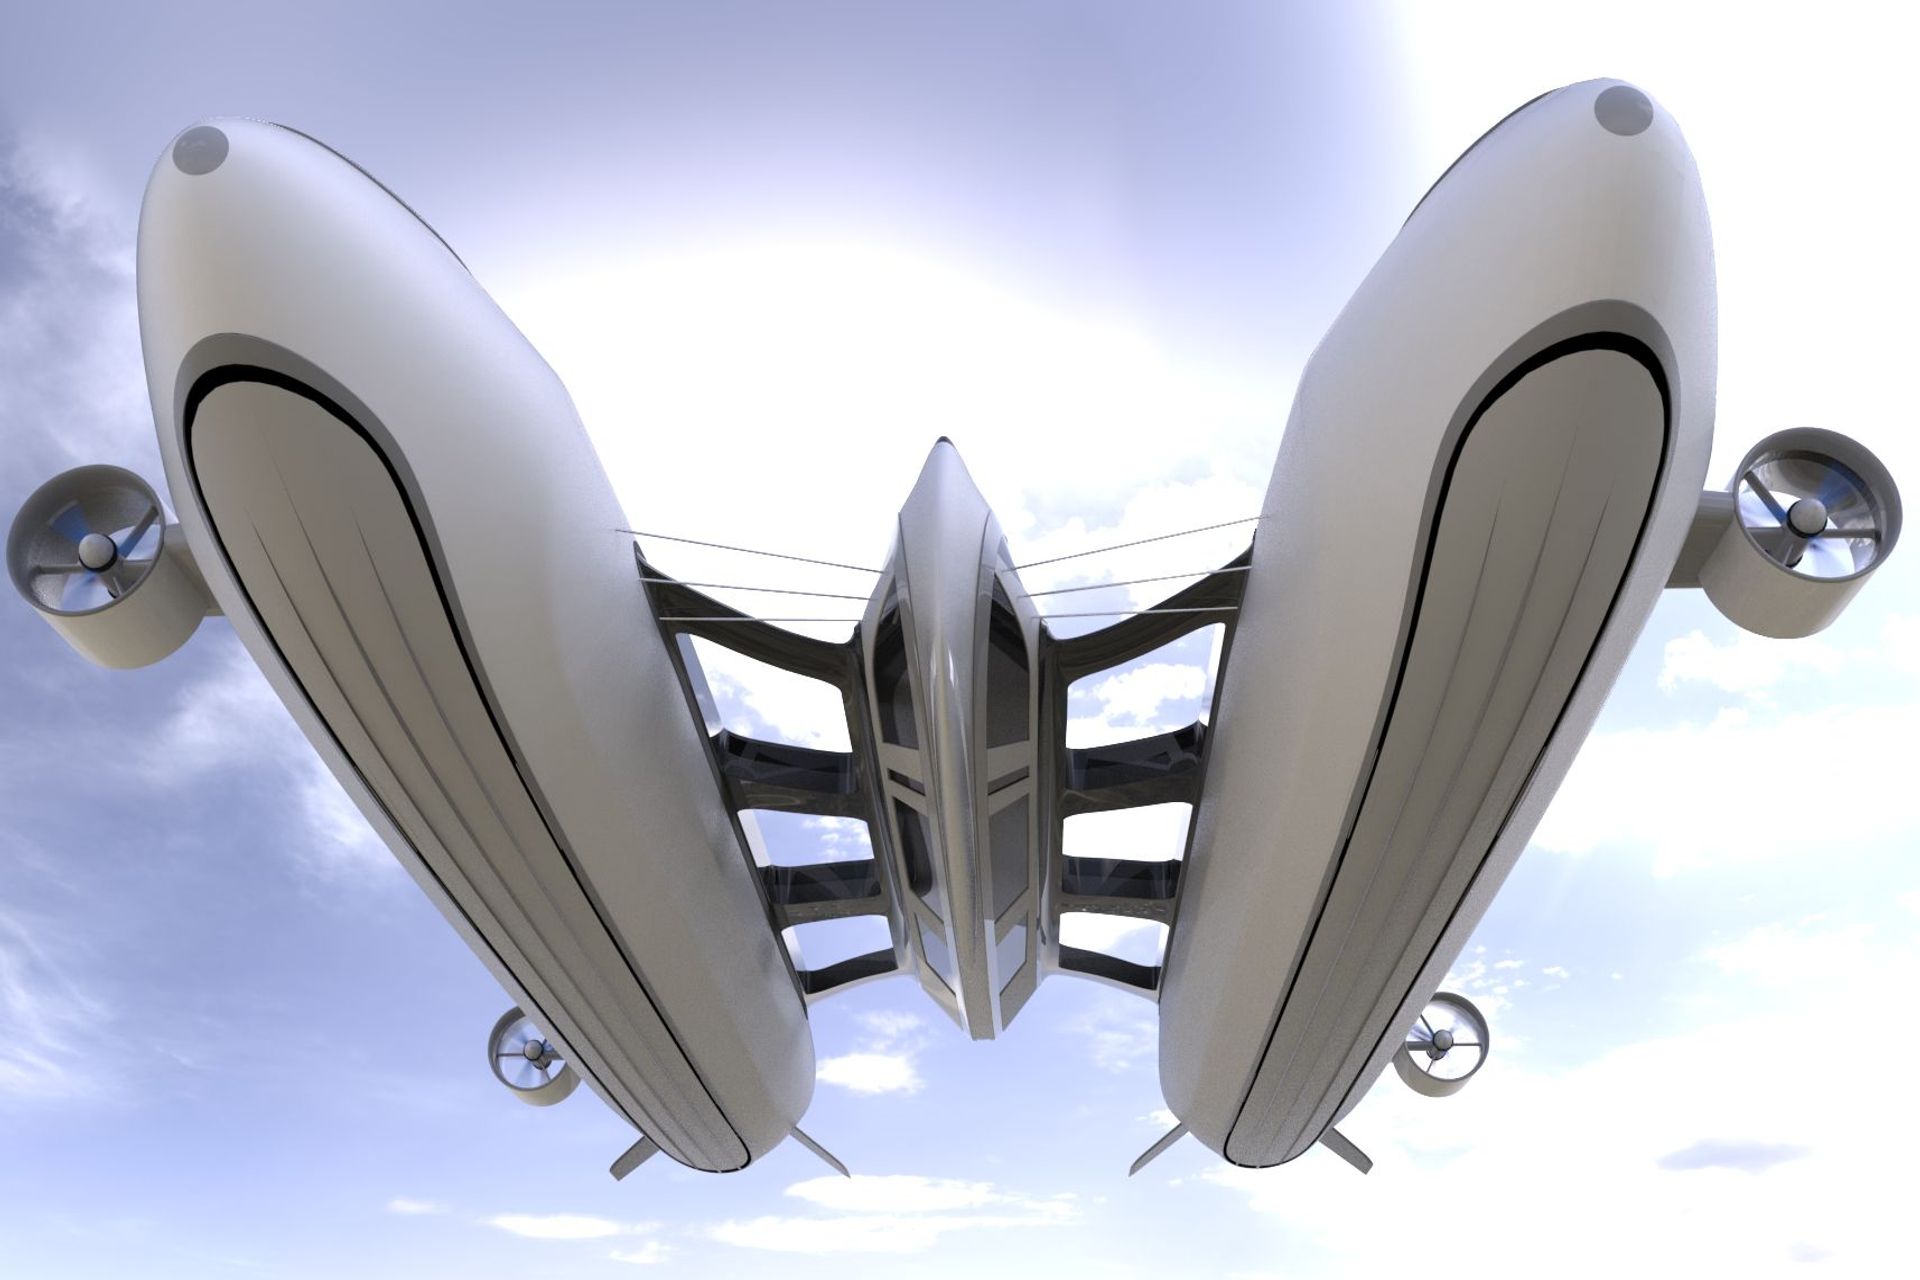 Il concept 'Sky Yacht' elaborato dallo studio Lazzarini Design per una mobilità aerea e acquatica sostenibile